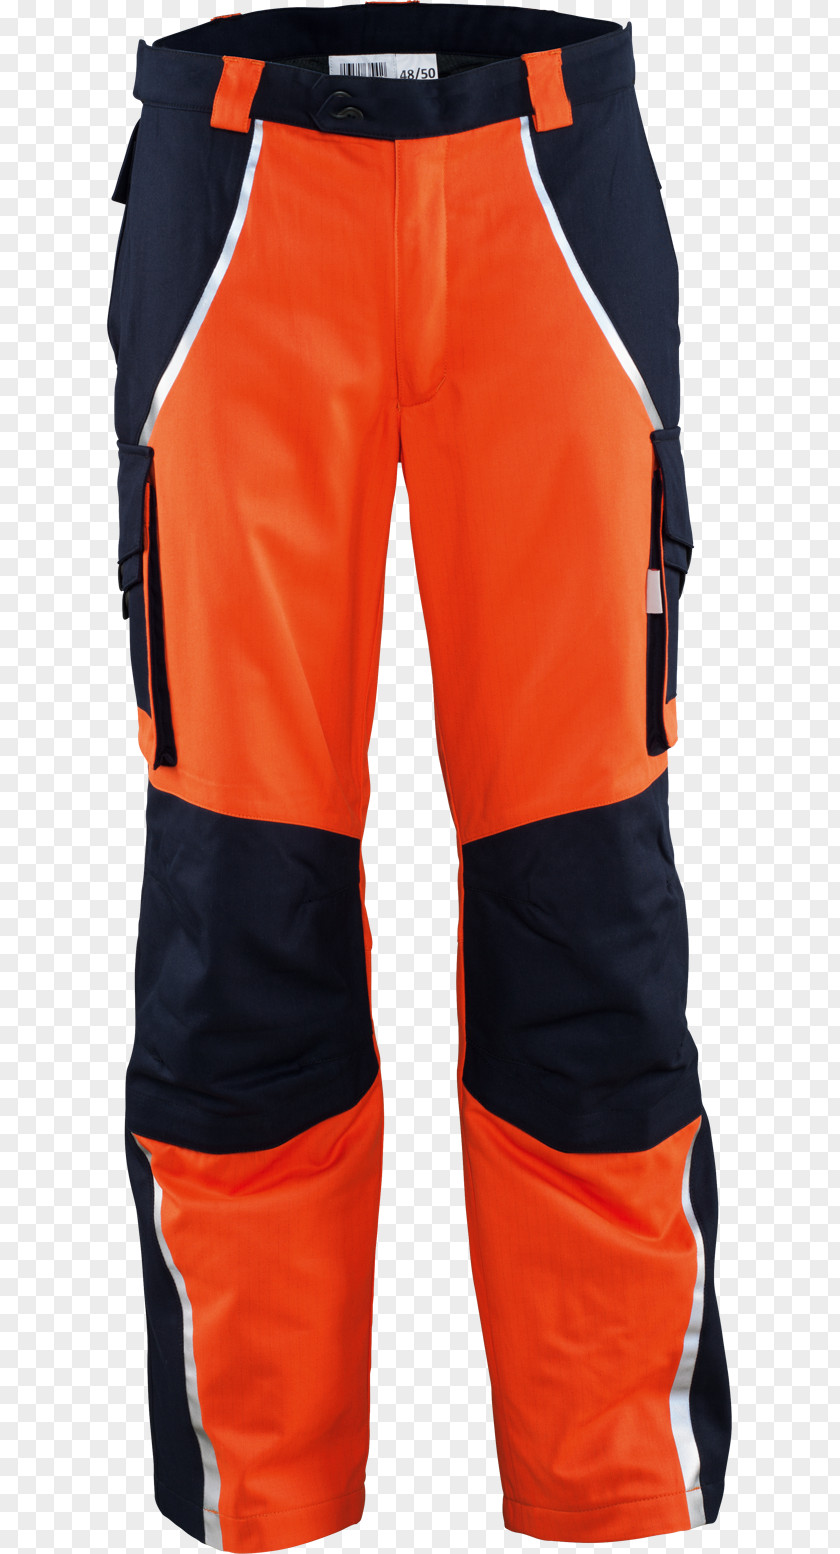 Flash Material Adobe Hockey Protective Pants & Ski Shorts Jacket PNG